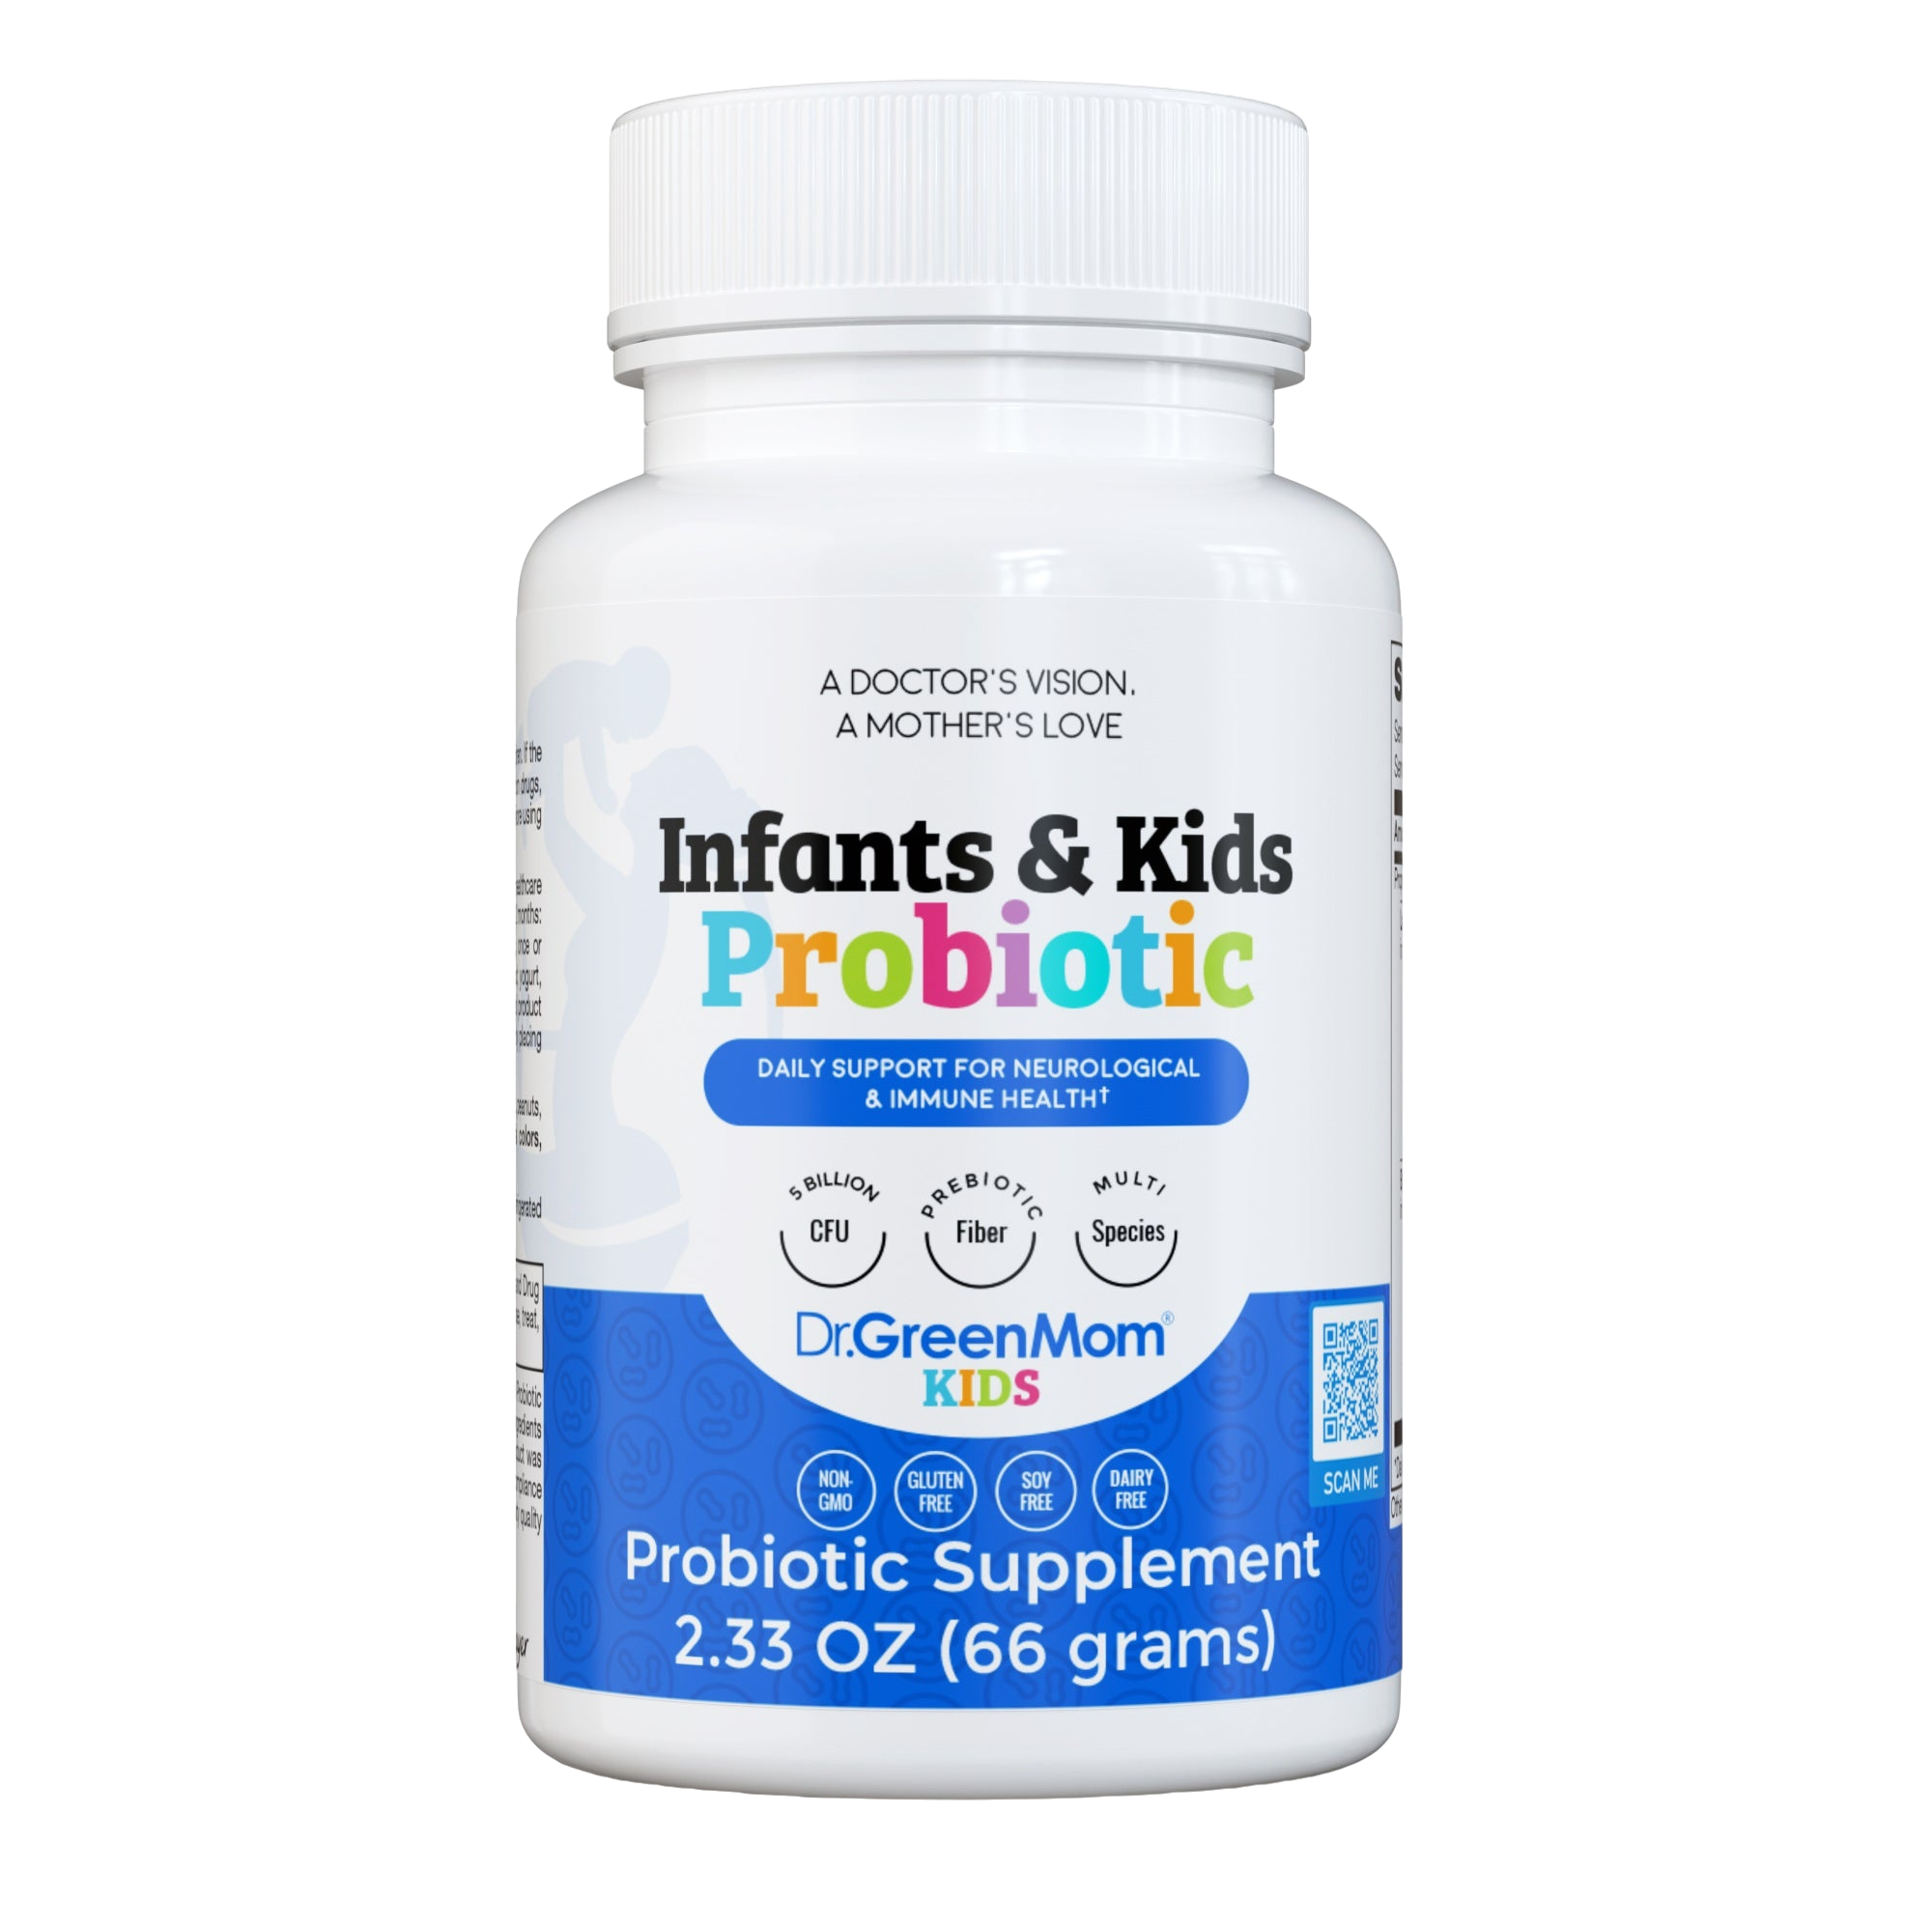 Bundle product Infants & Kids Probiotic